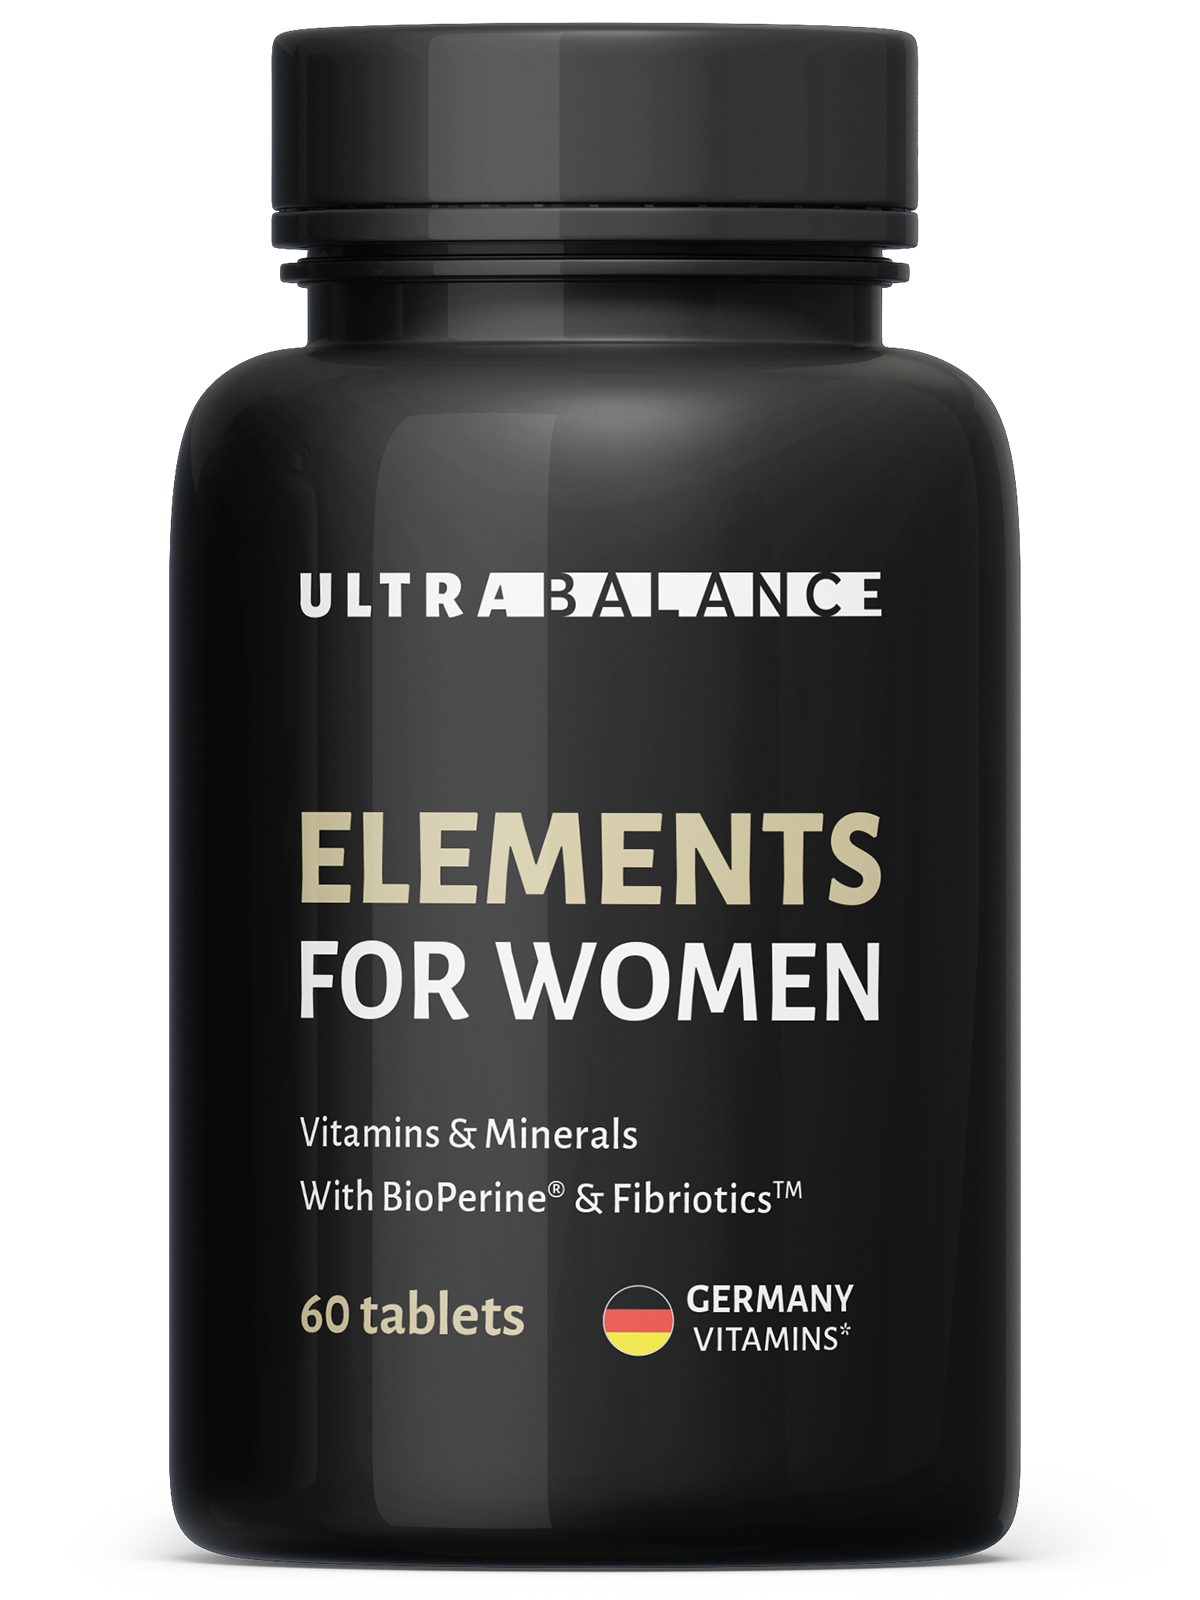 Мультивитамины для женщин UltraBalance Elements for women таблетки 60 шт.